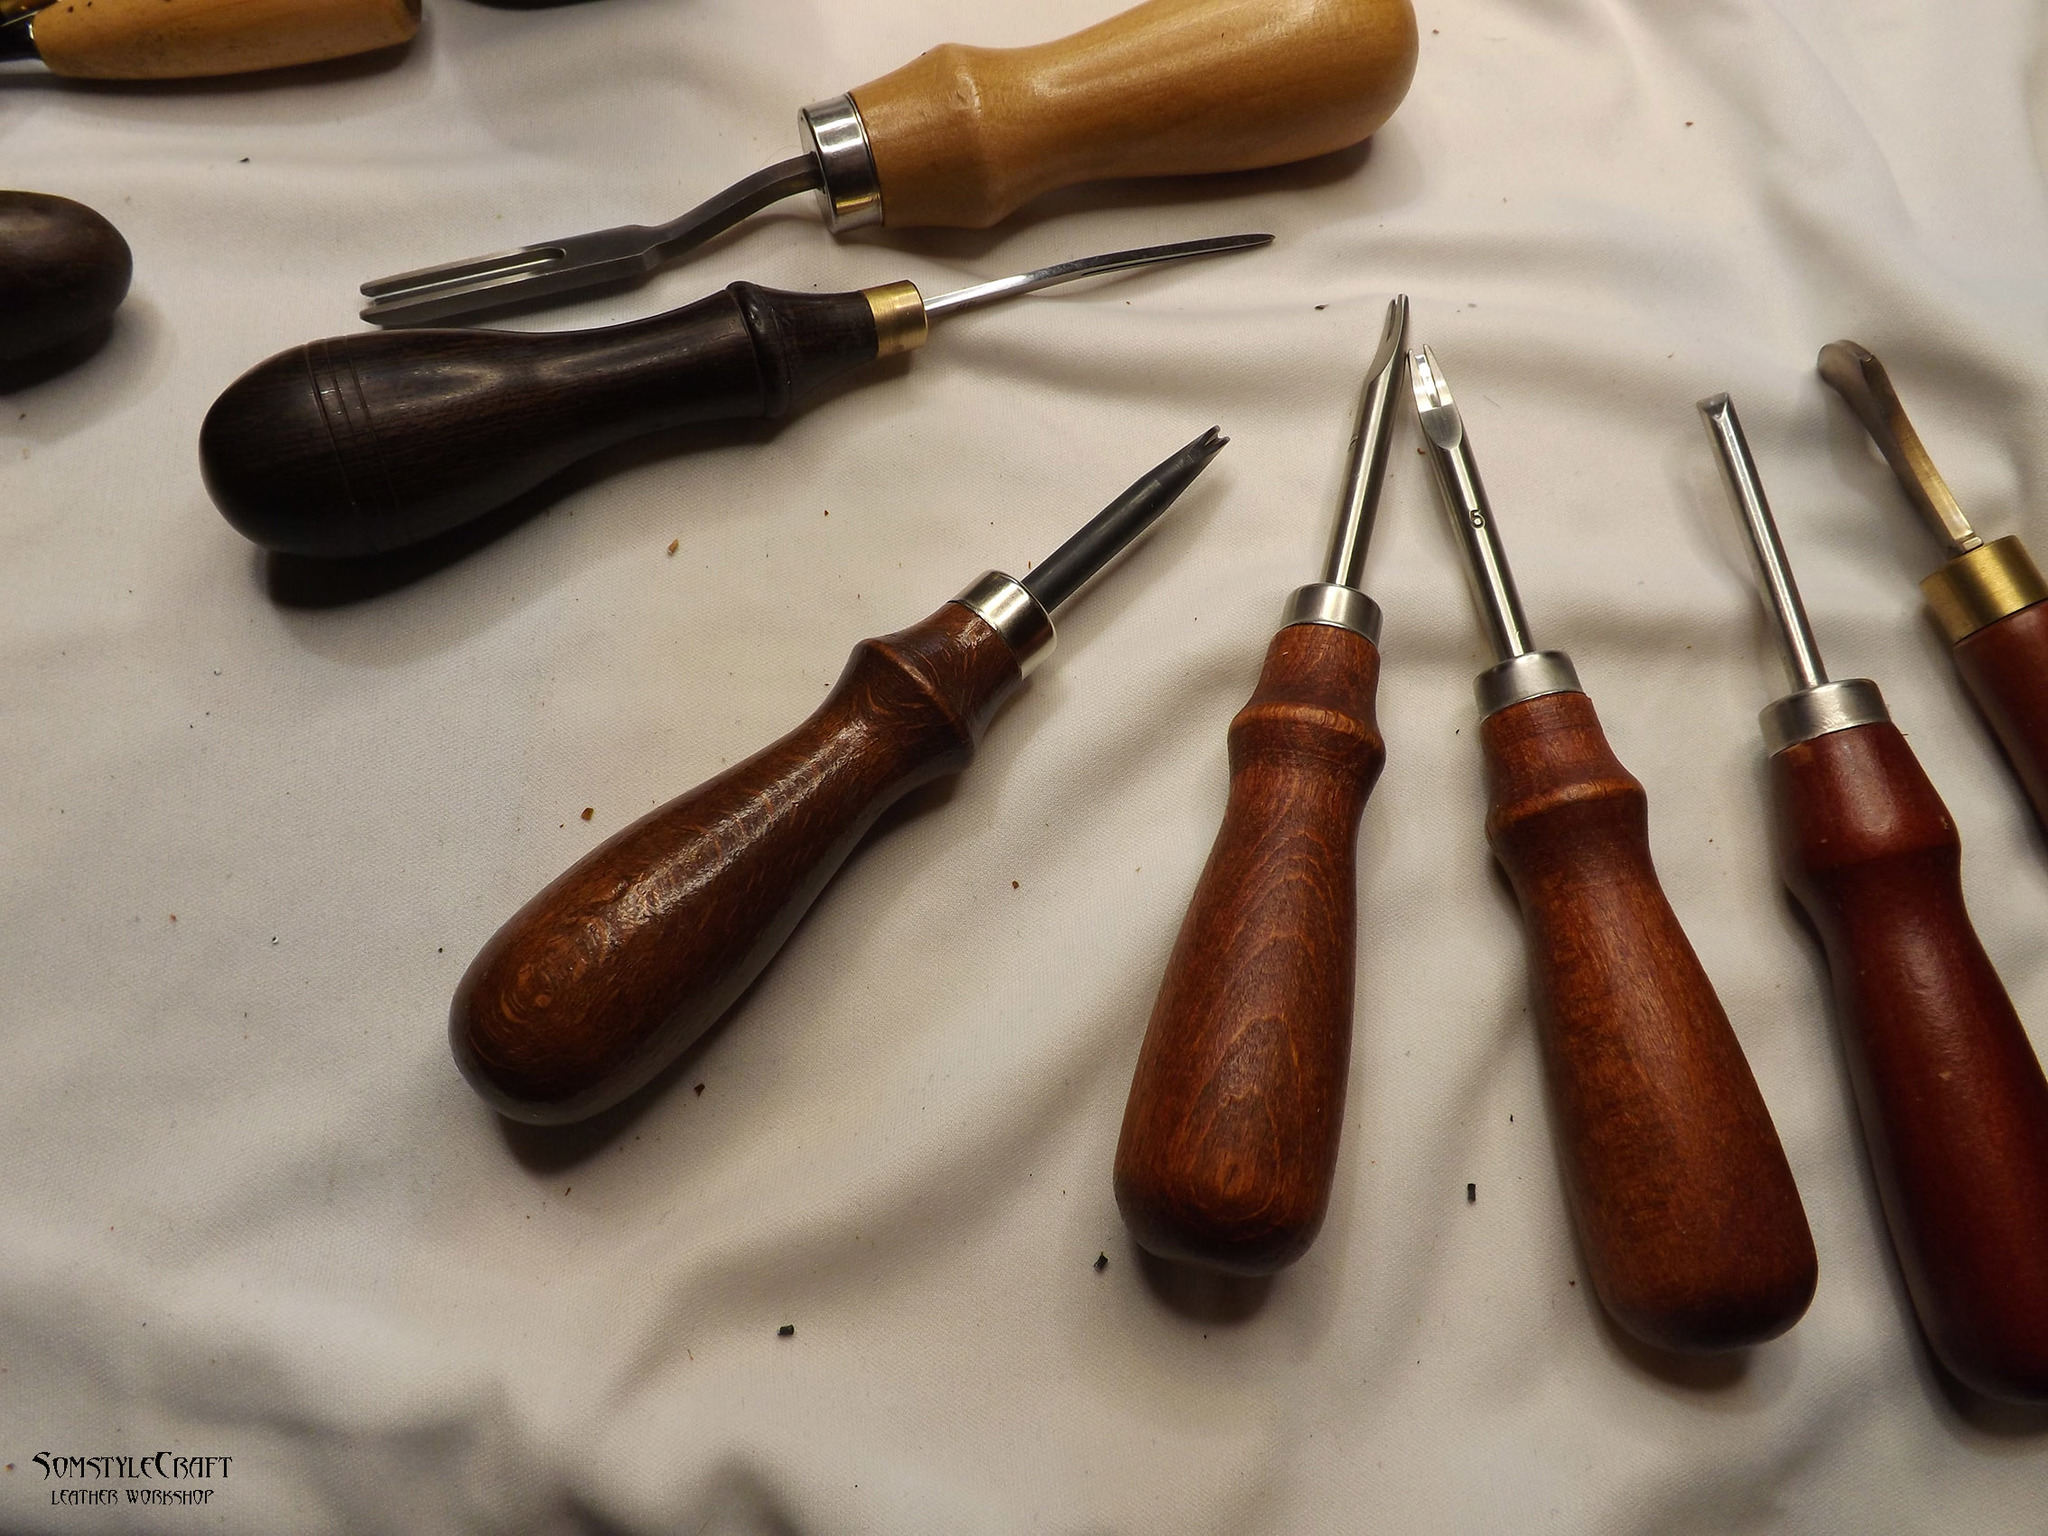 Джентльменский набор начинающего скорняка или основные инструменты для обработки кожи